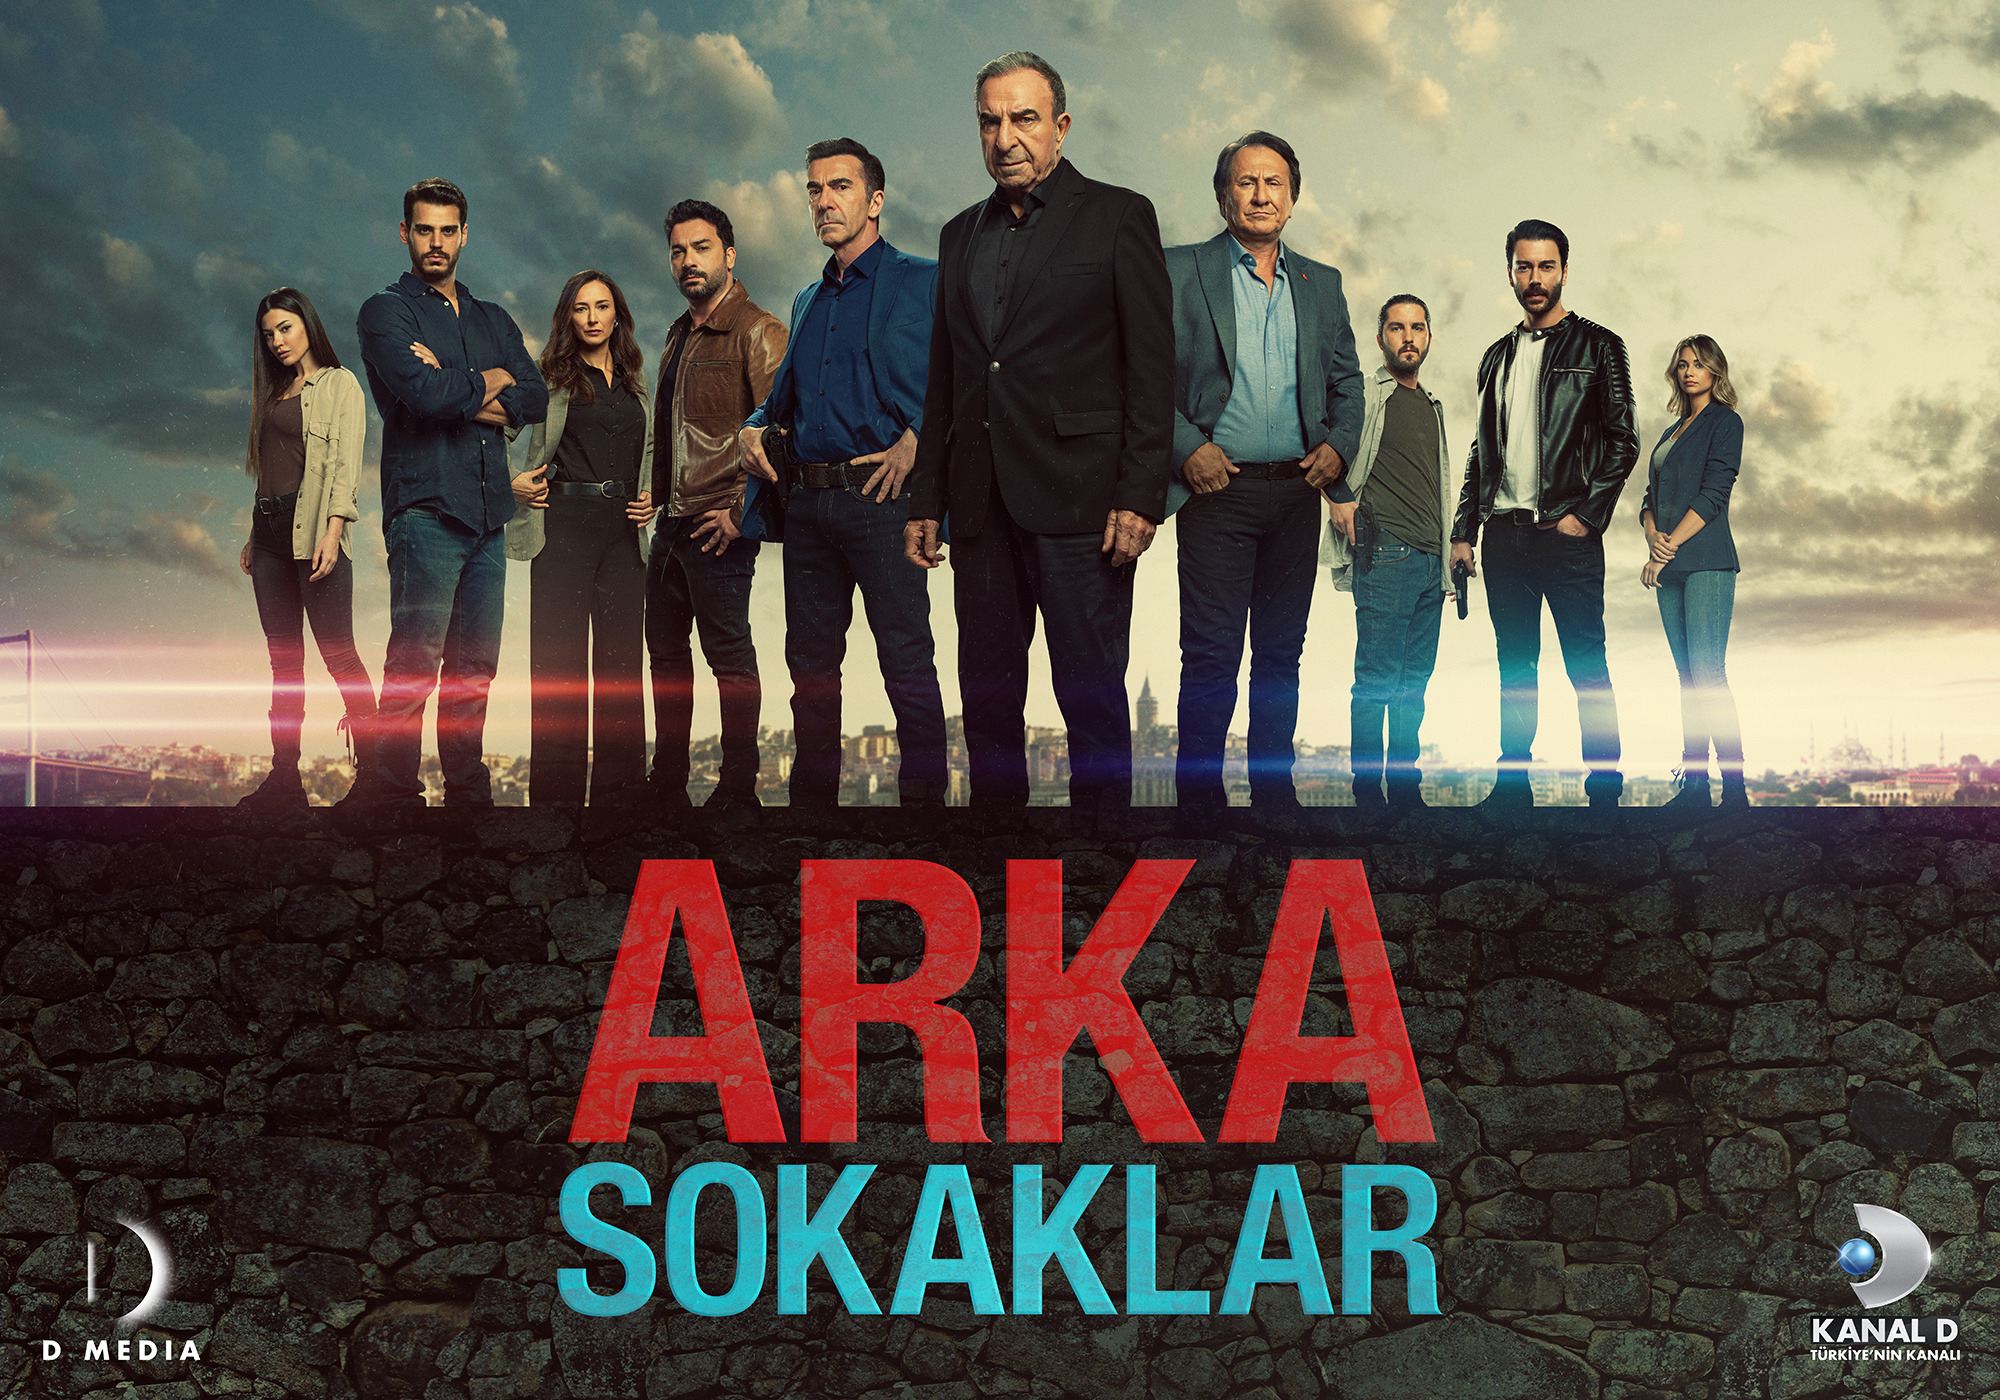 Mega Sized TV Poster Image for Arka sokaklar (#11 of 11)